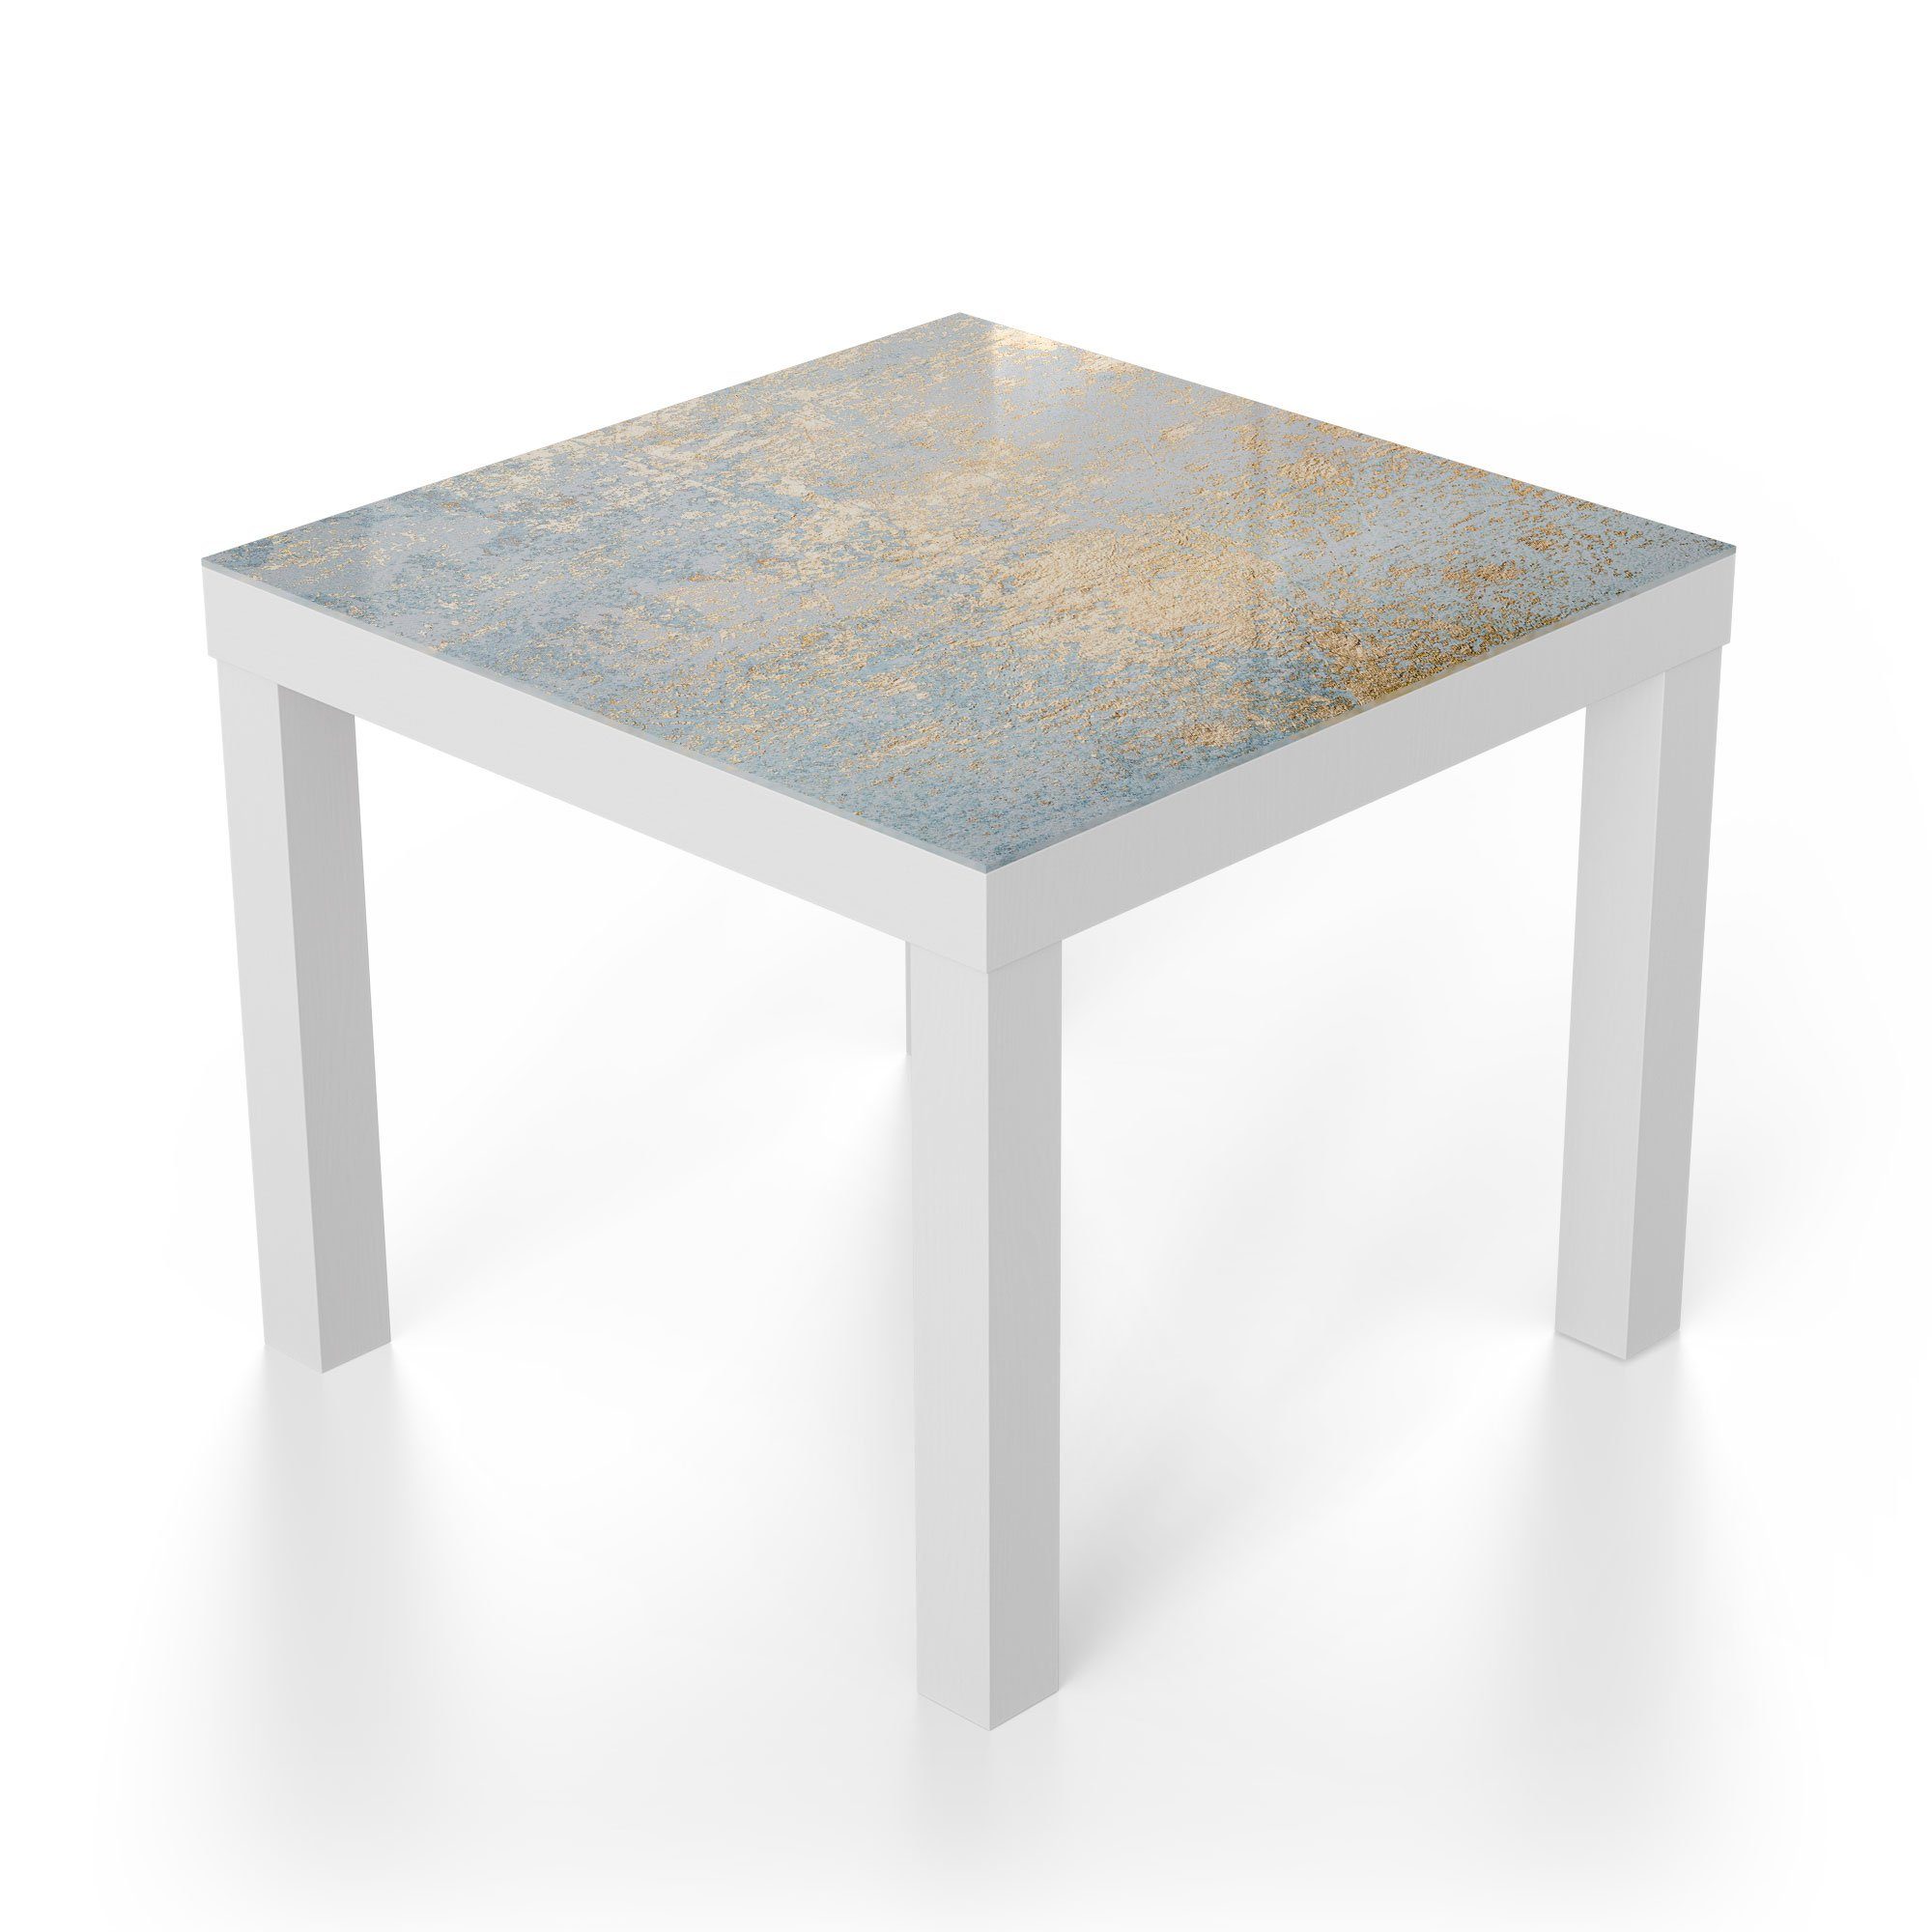 'Wand Gold-Struktur', DEQORI Beistelltisch Weiß Glastisch mit Couchtisch modern Glas